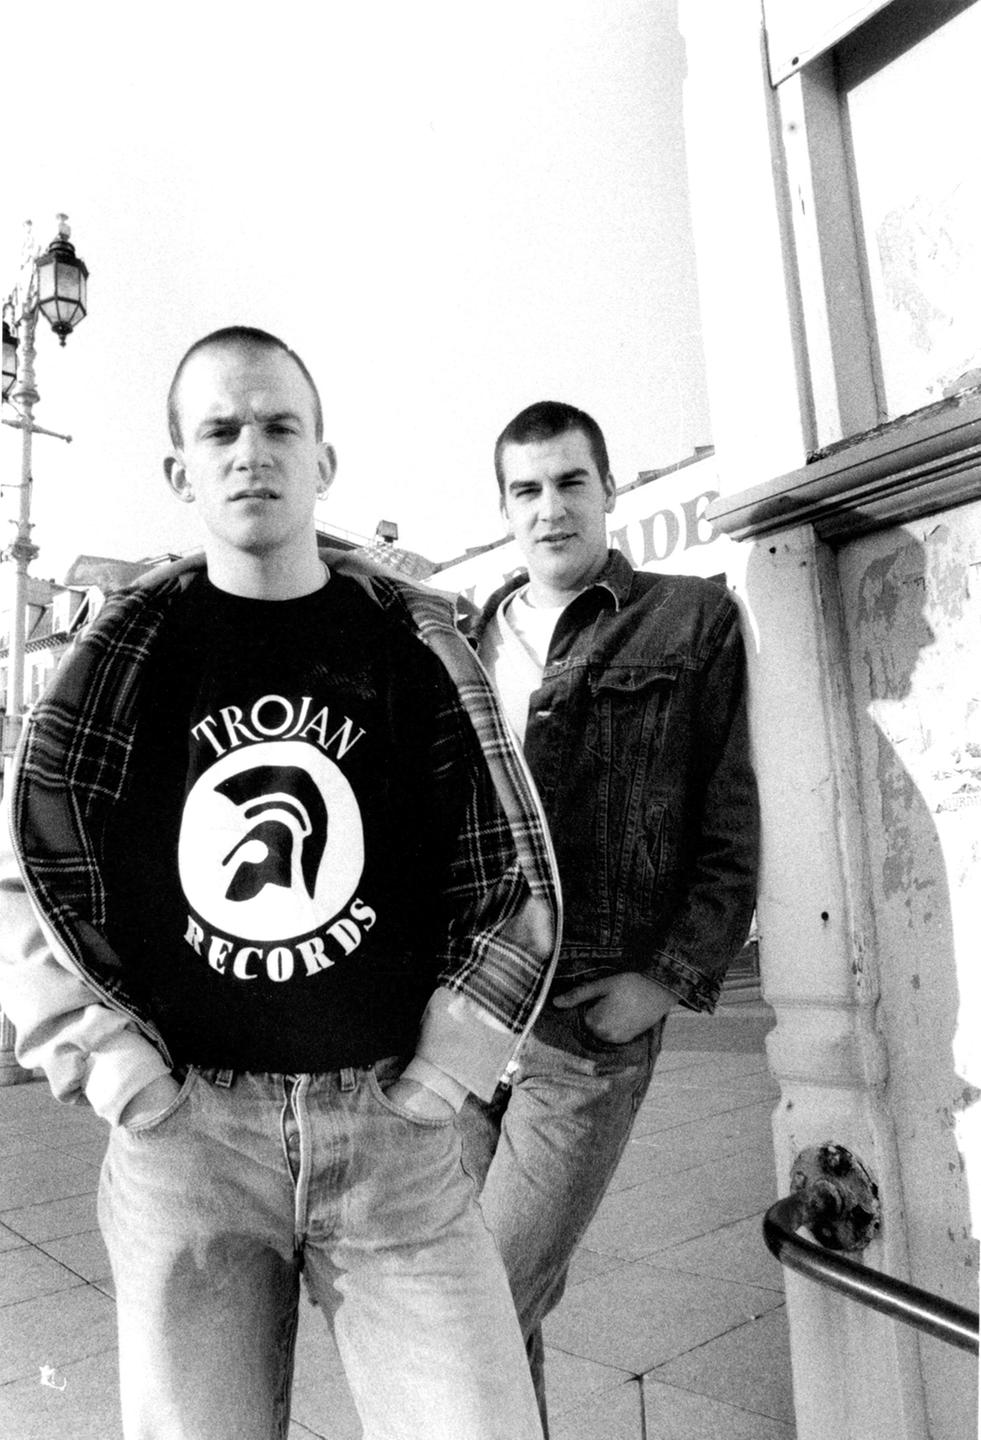 Zwei Jugendliche Skinheads in den 80ern. Einer trägt ein T-Shirt des legendären Reggae-Labels "Trojan Records".